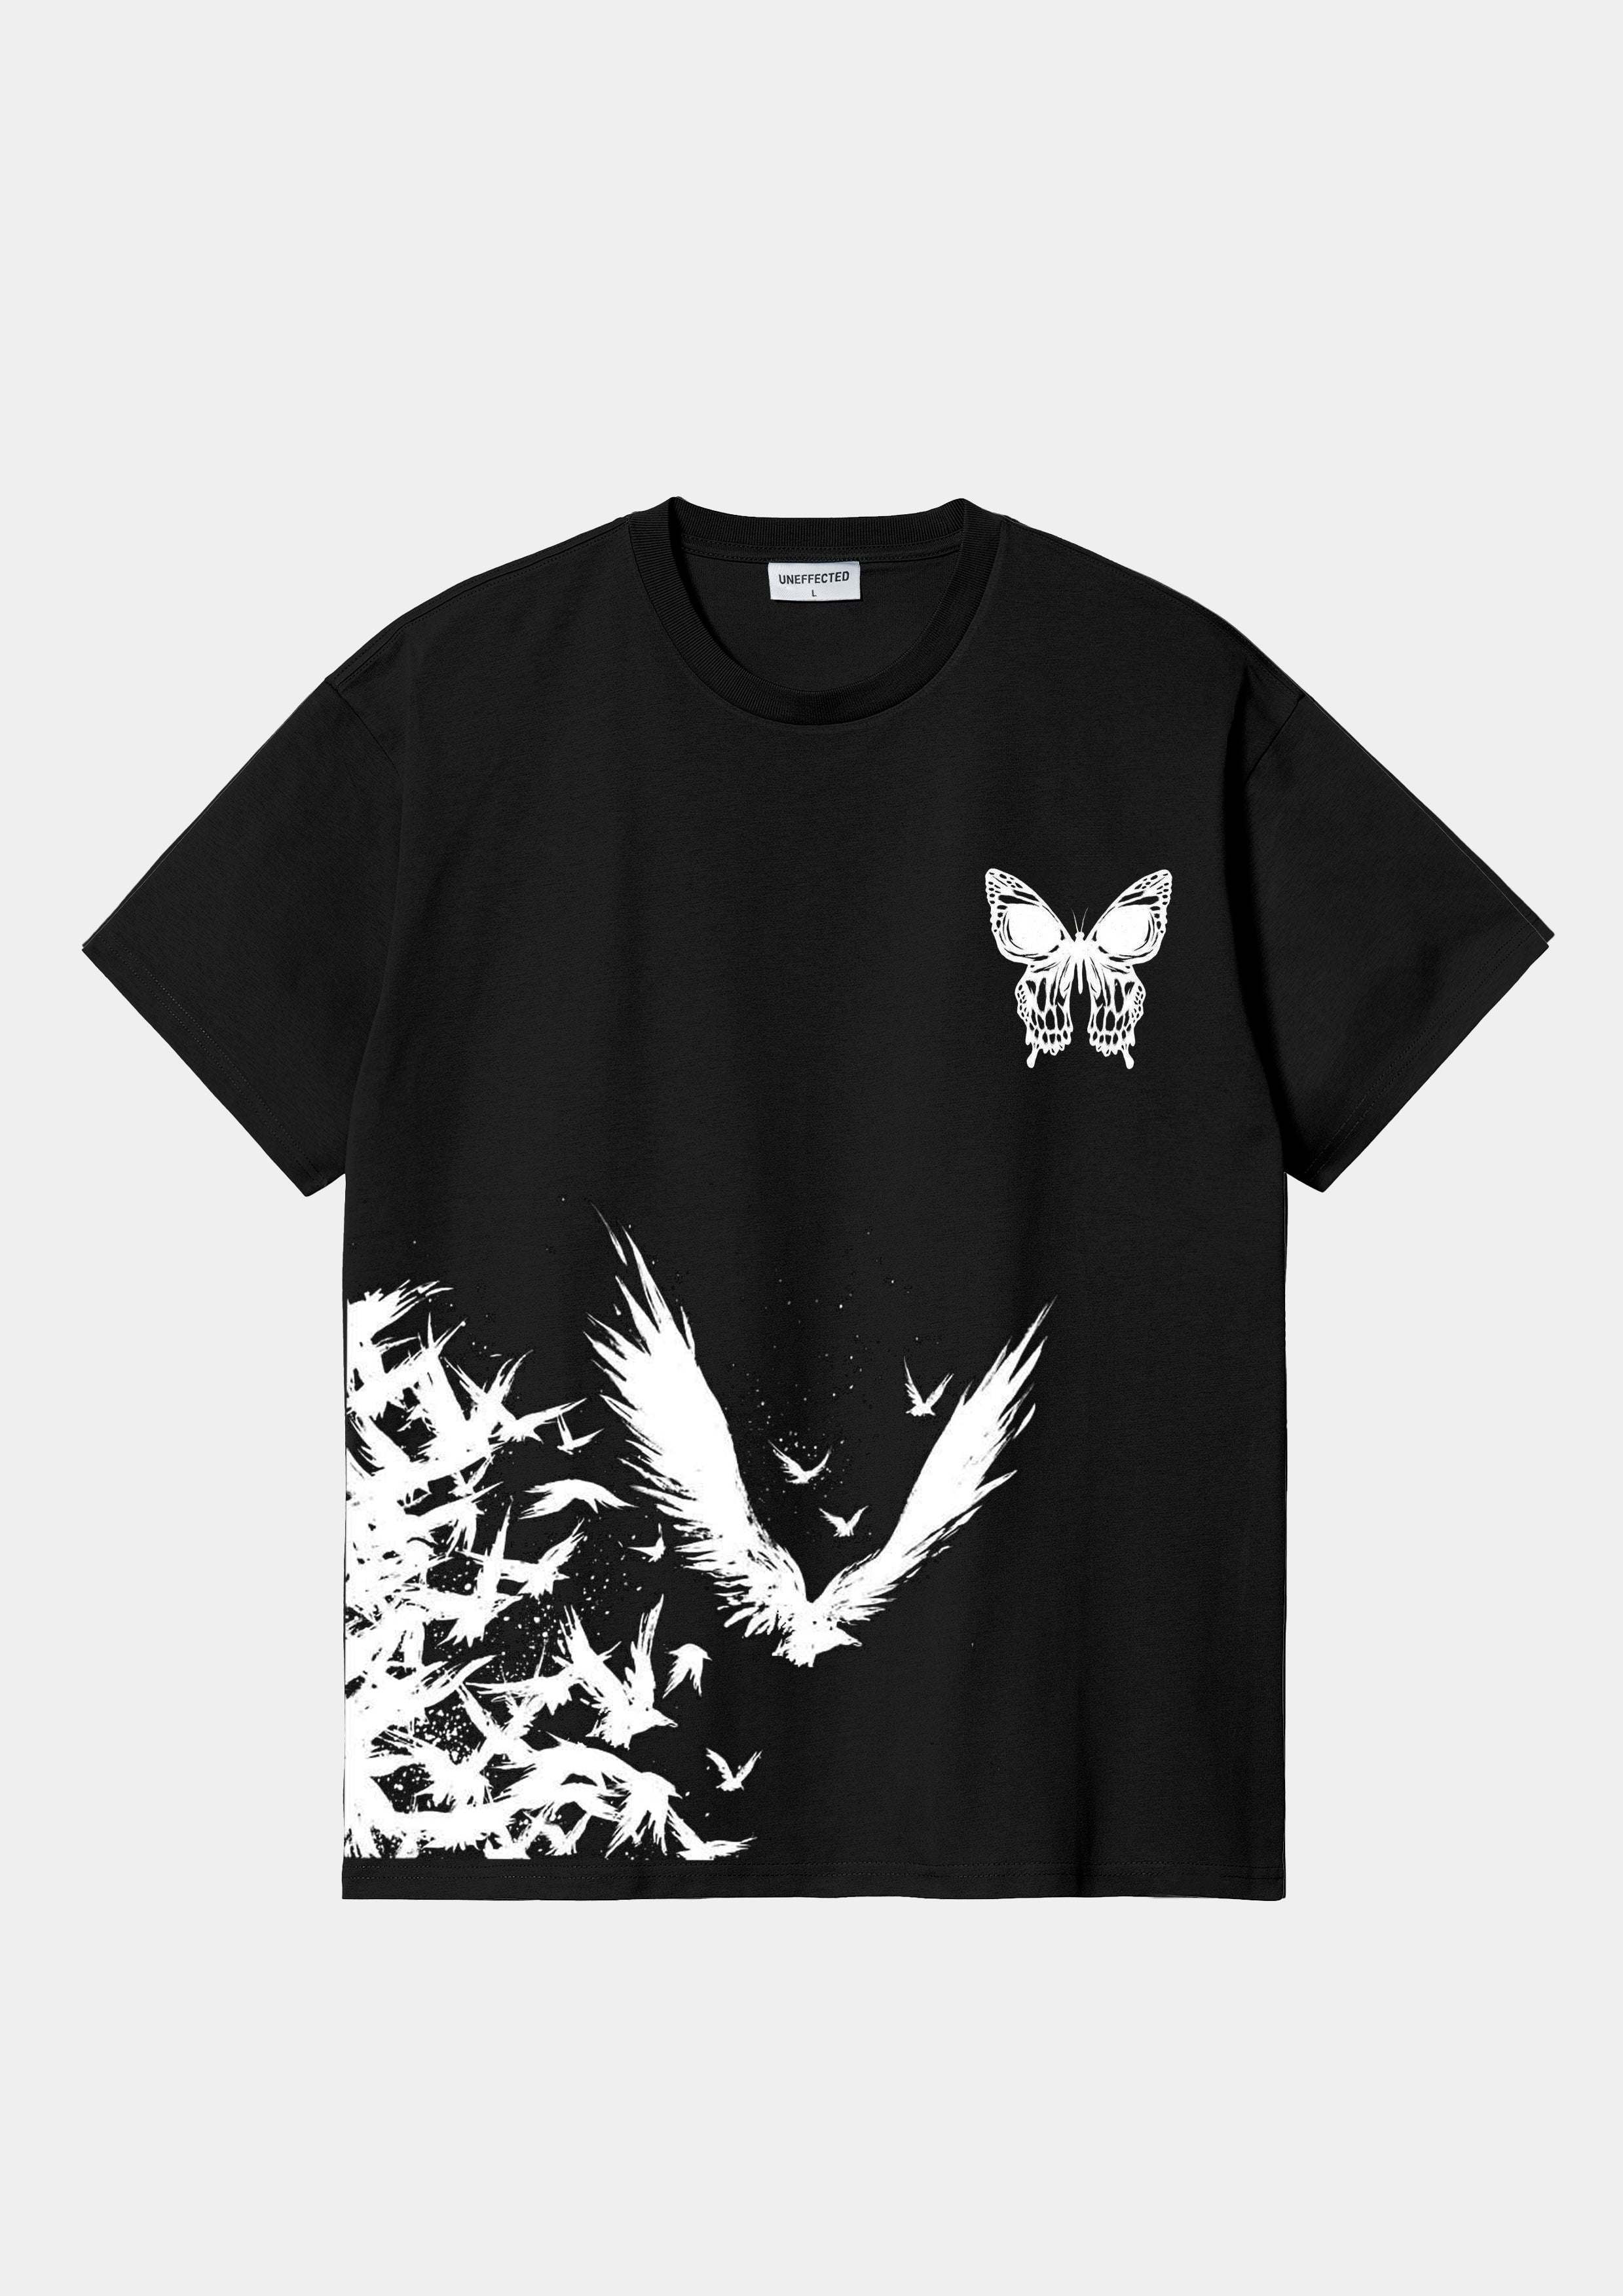 Butterfly Effect Relaxed Tee Black - UNEFFECTED STUDIOS® - T - shirt - UNEFFECTED STUDIOS®